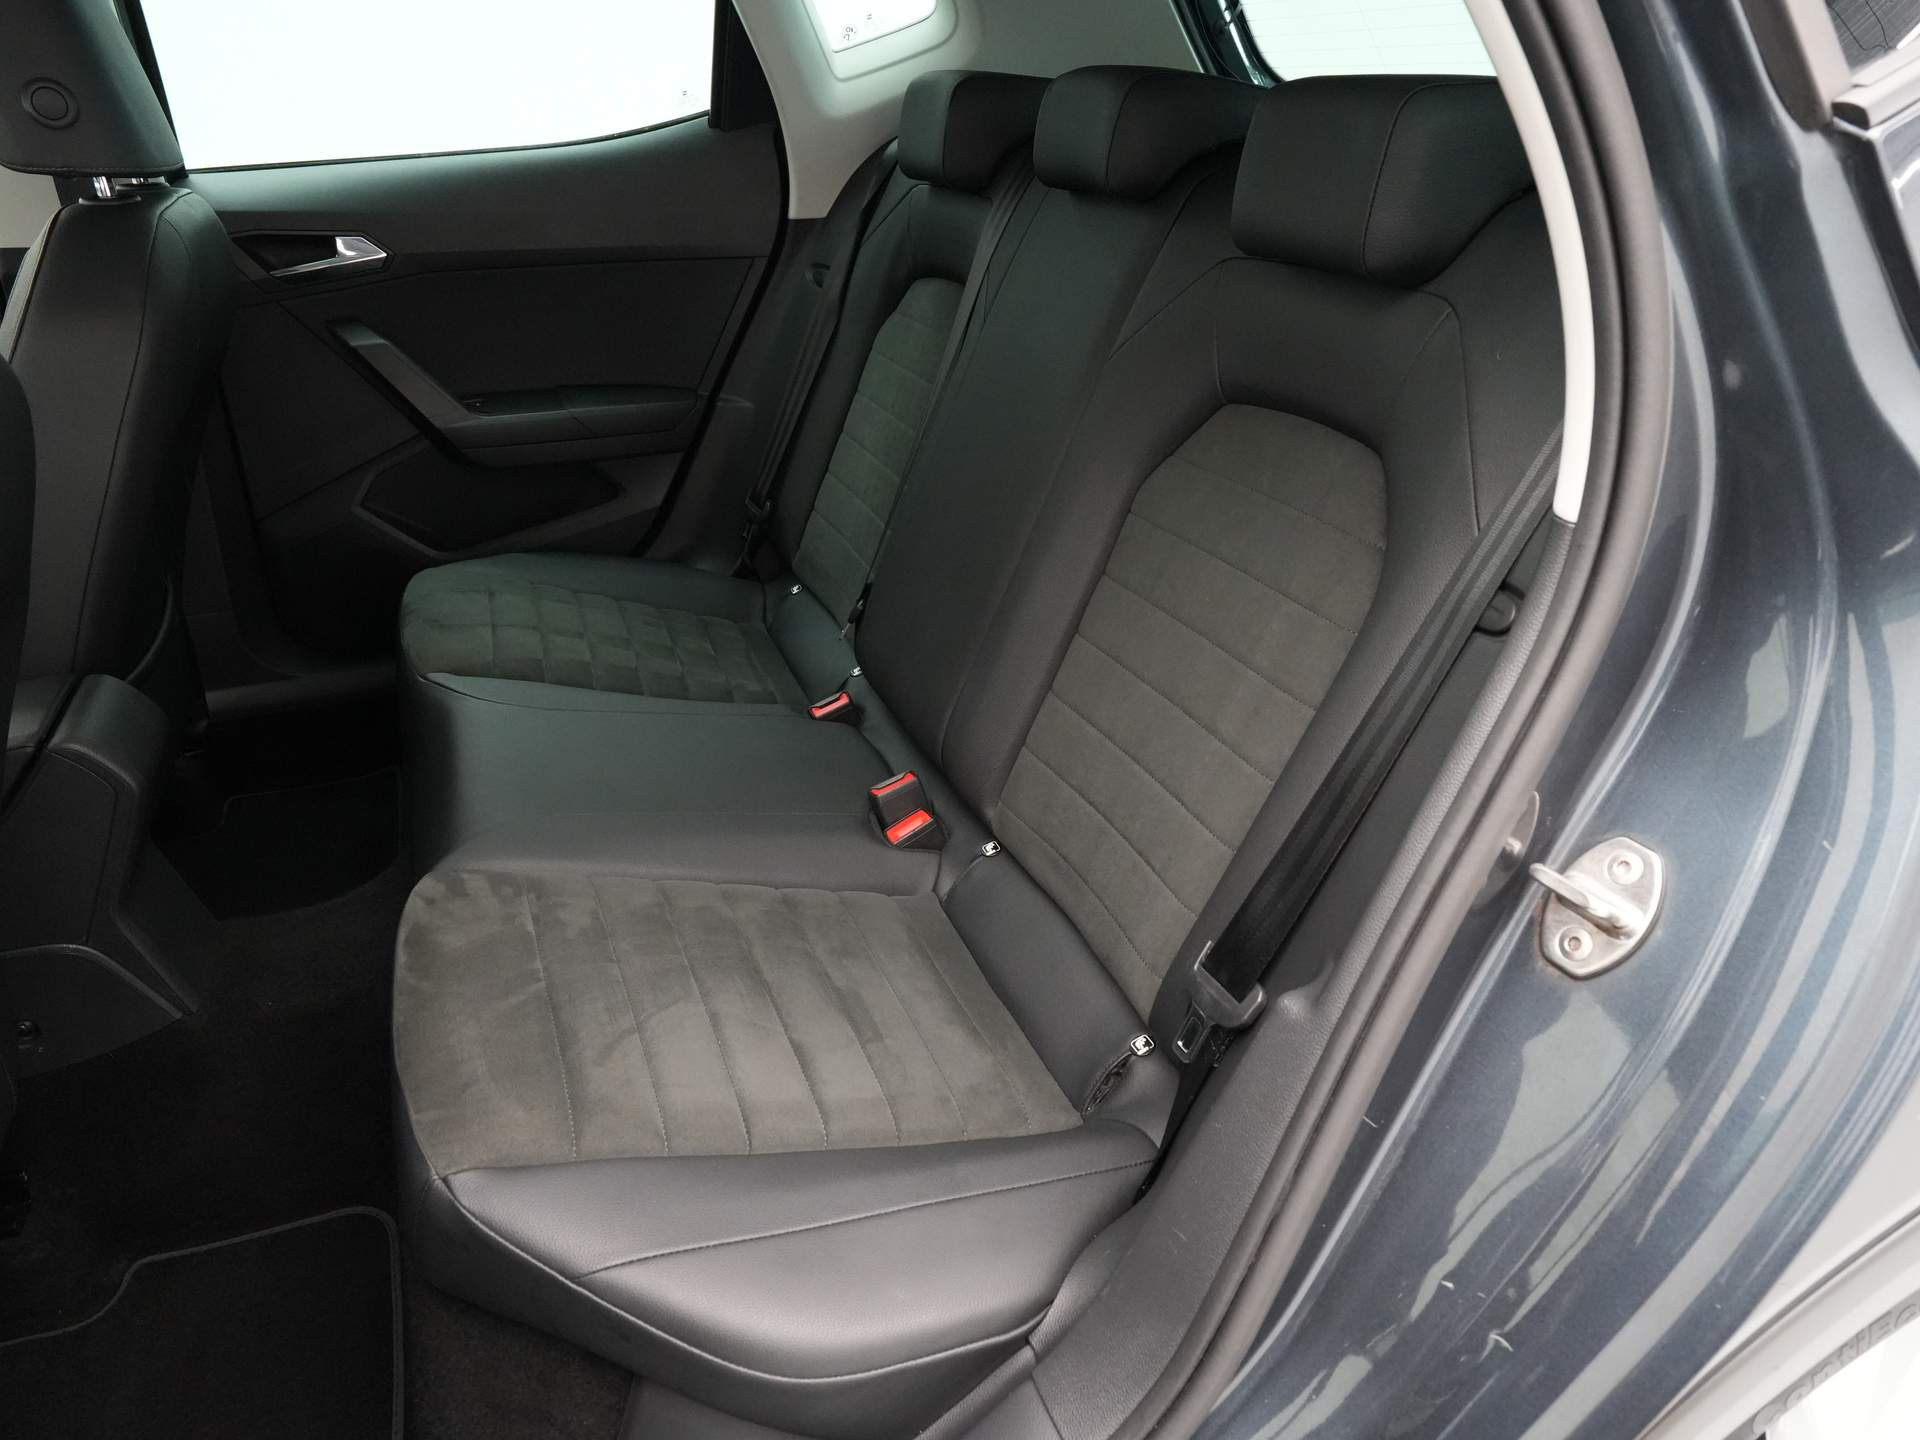 SEAT - Arona 1.0 TSI 95pk Style Business Intense - 2020